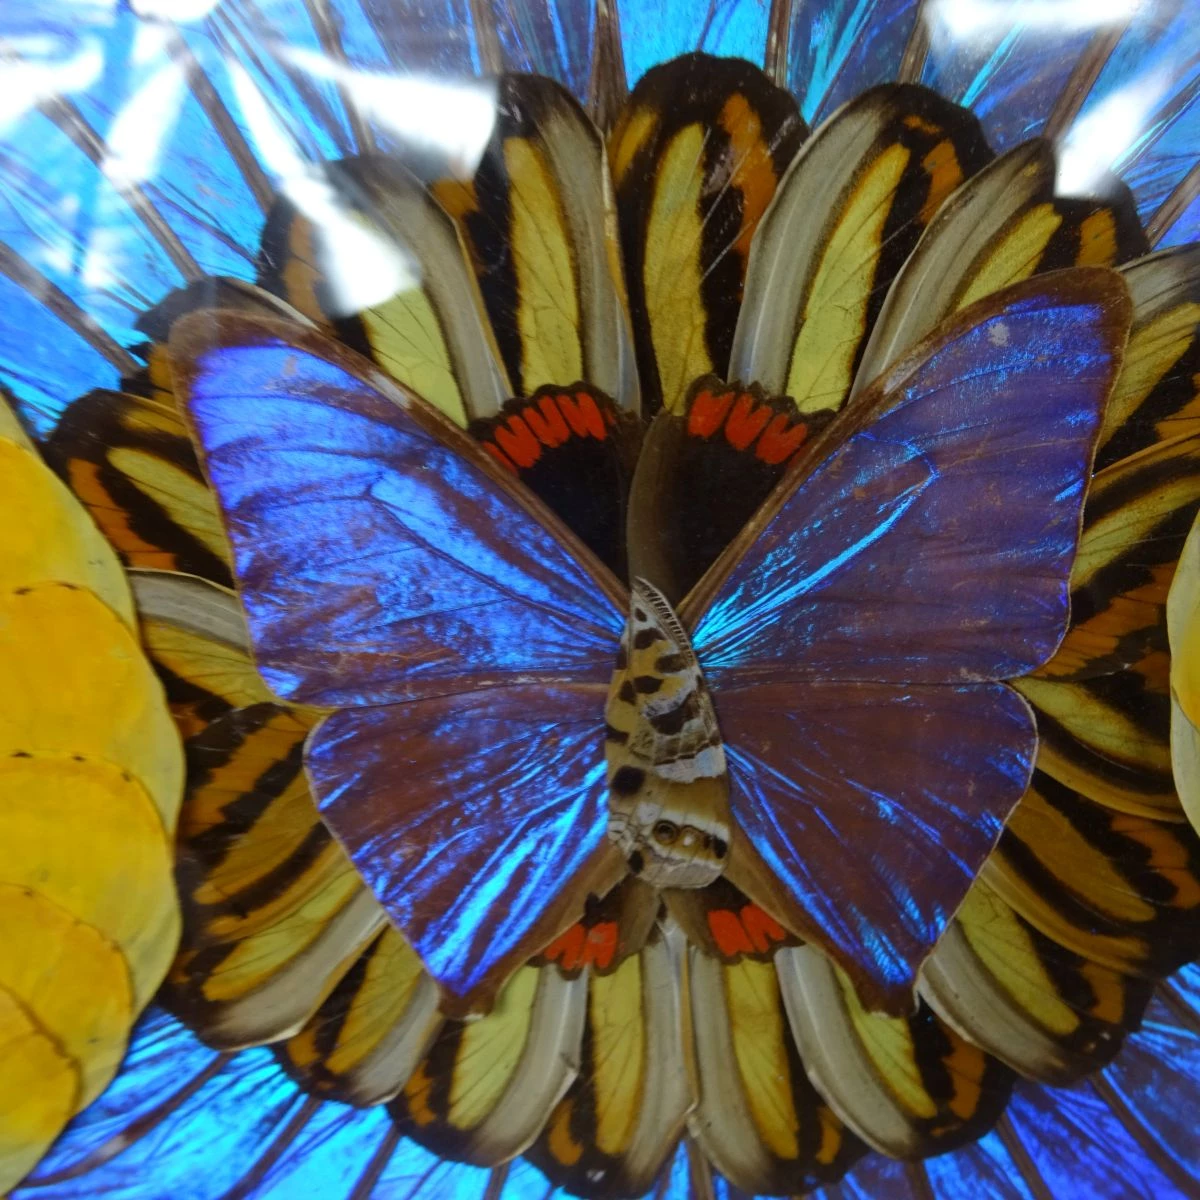 Cadre rond de papillon aquarelle provenant de différentes tipes de